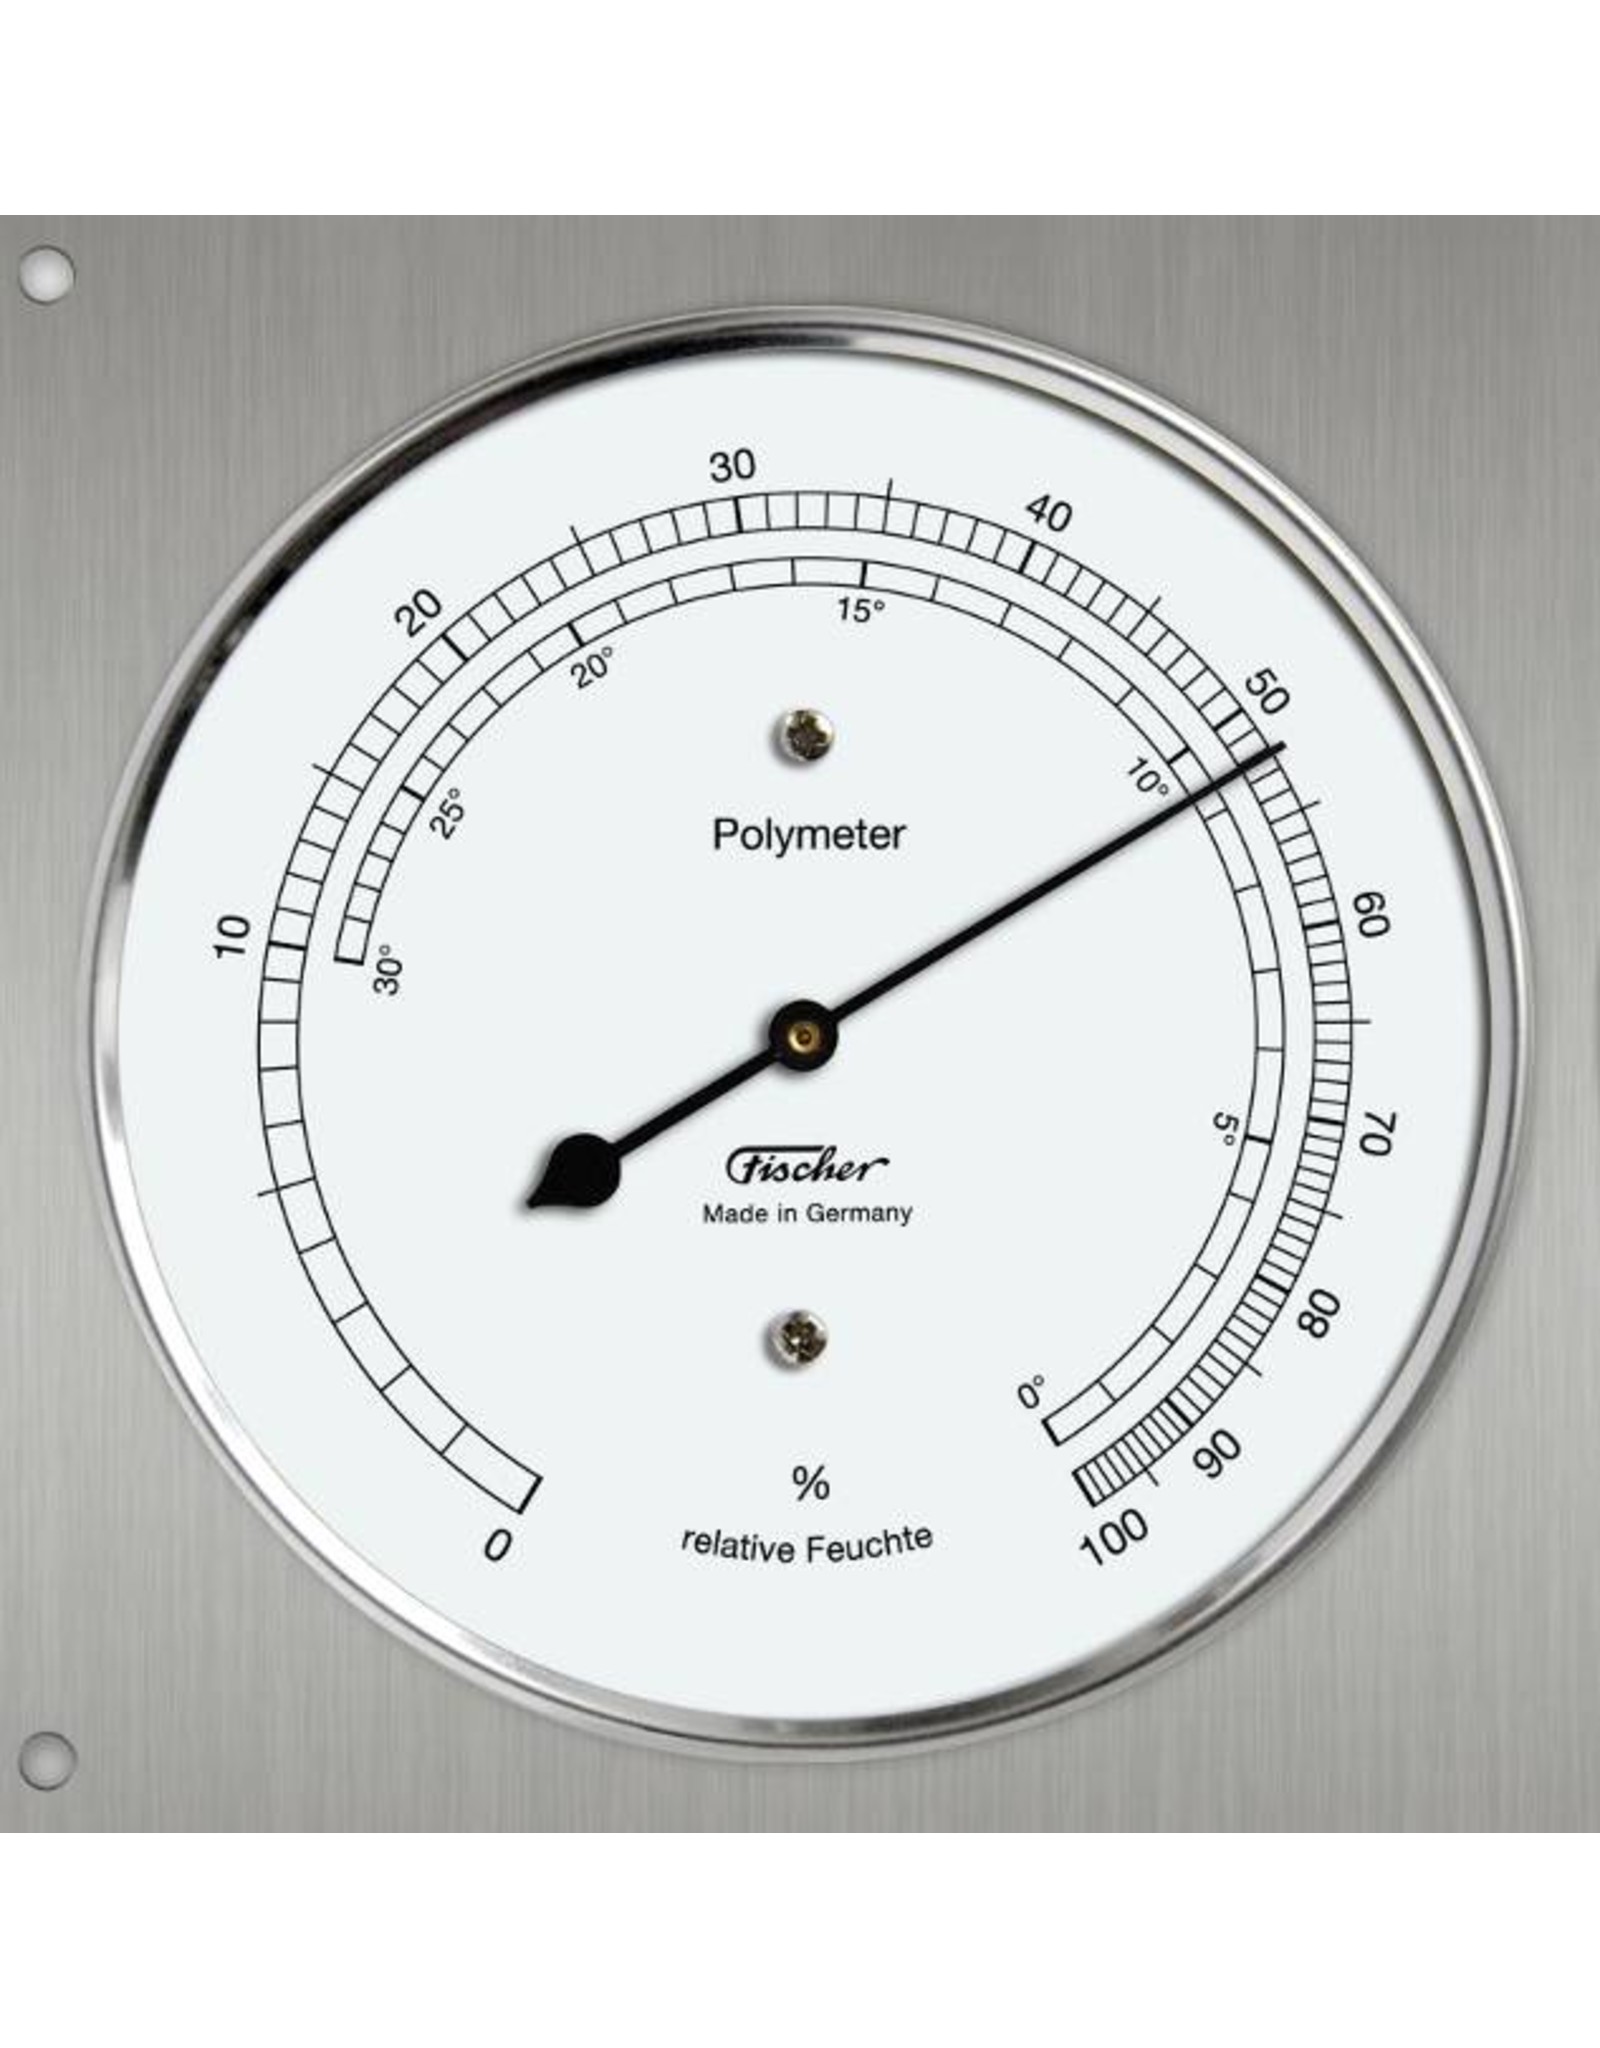 Fischer 009 Polymeter met hygrometer en thermometer, dauwpunt, dampdruk, etc!